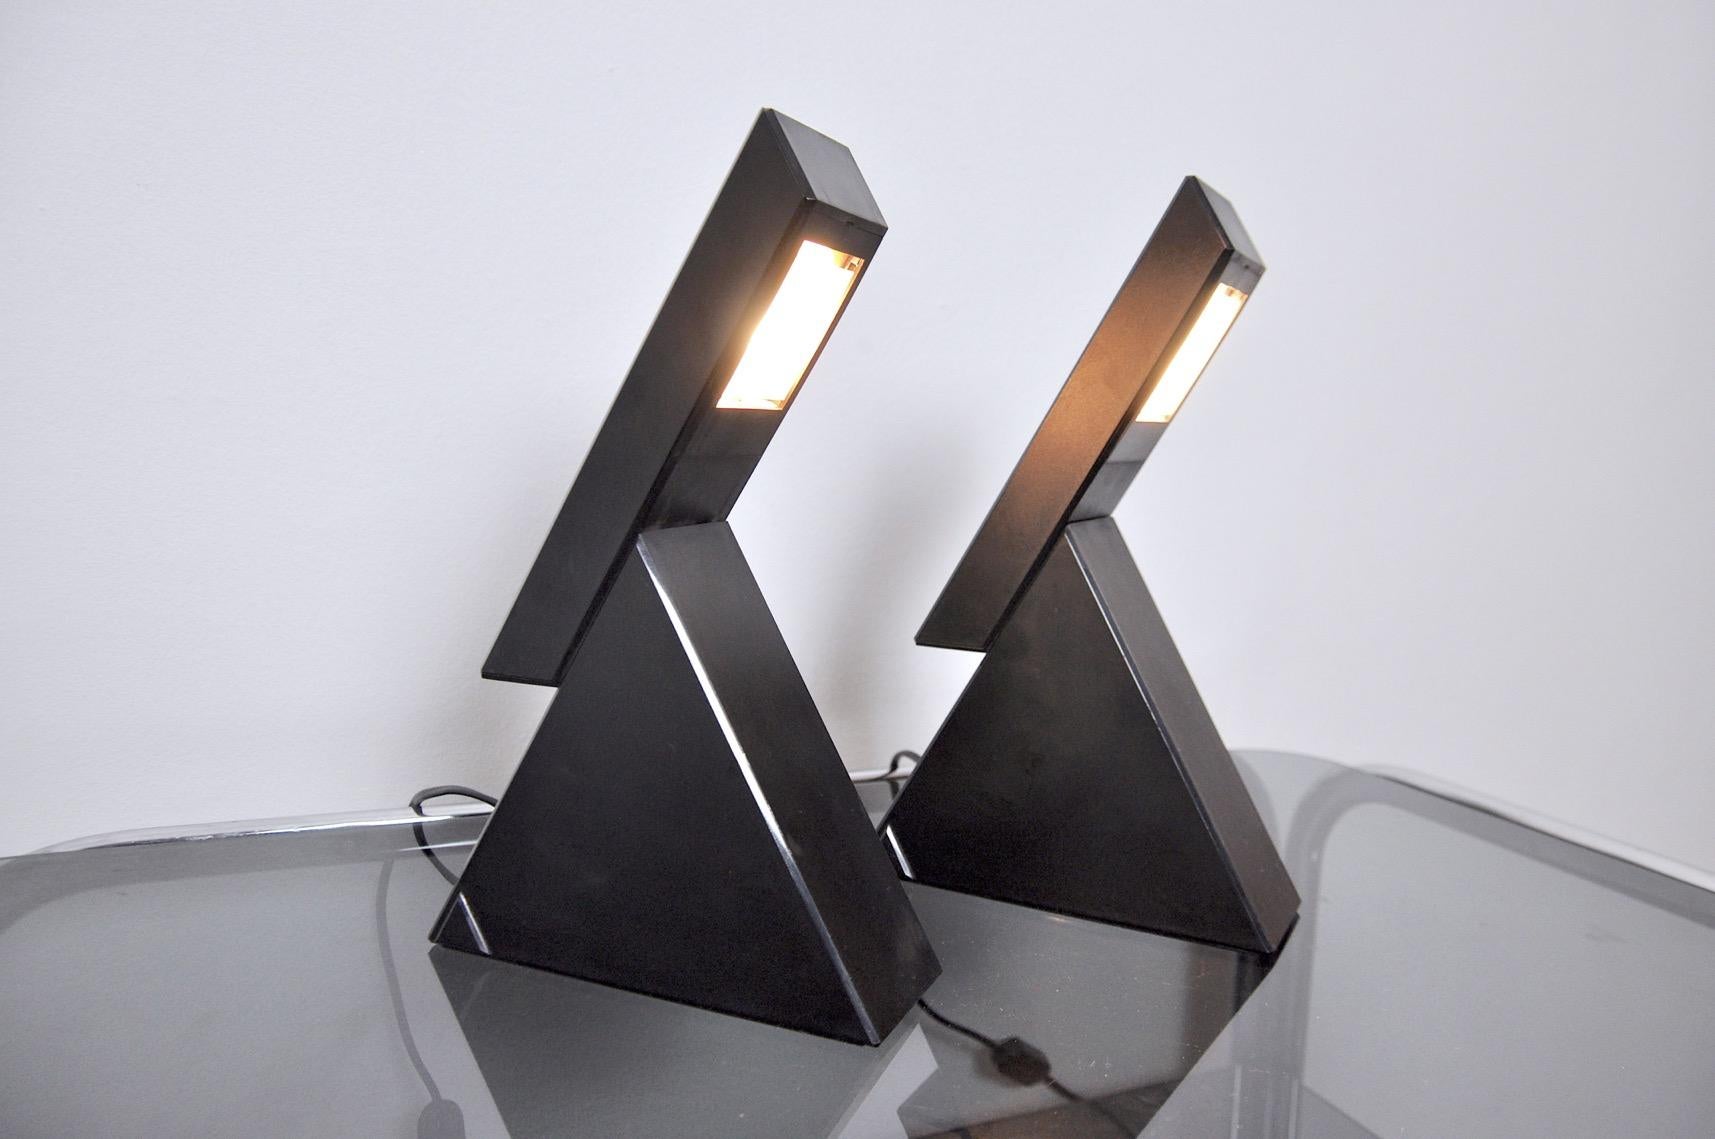 Paire de lampes Delta par Mario Bertorelle pour Massangazo désigné et produit en Italie vers 1970. Cette paire de lampes à la forme unique apportera une véritable touche design à votre intérieur. Deux niveaux de luminosité. Contrôle de